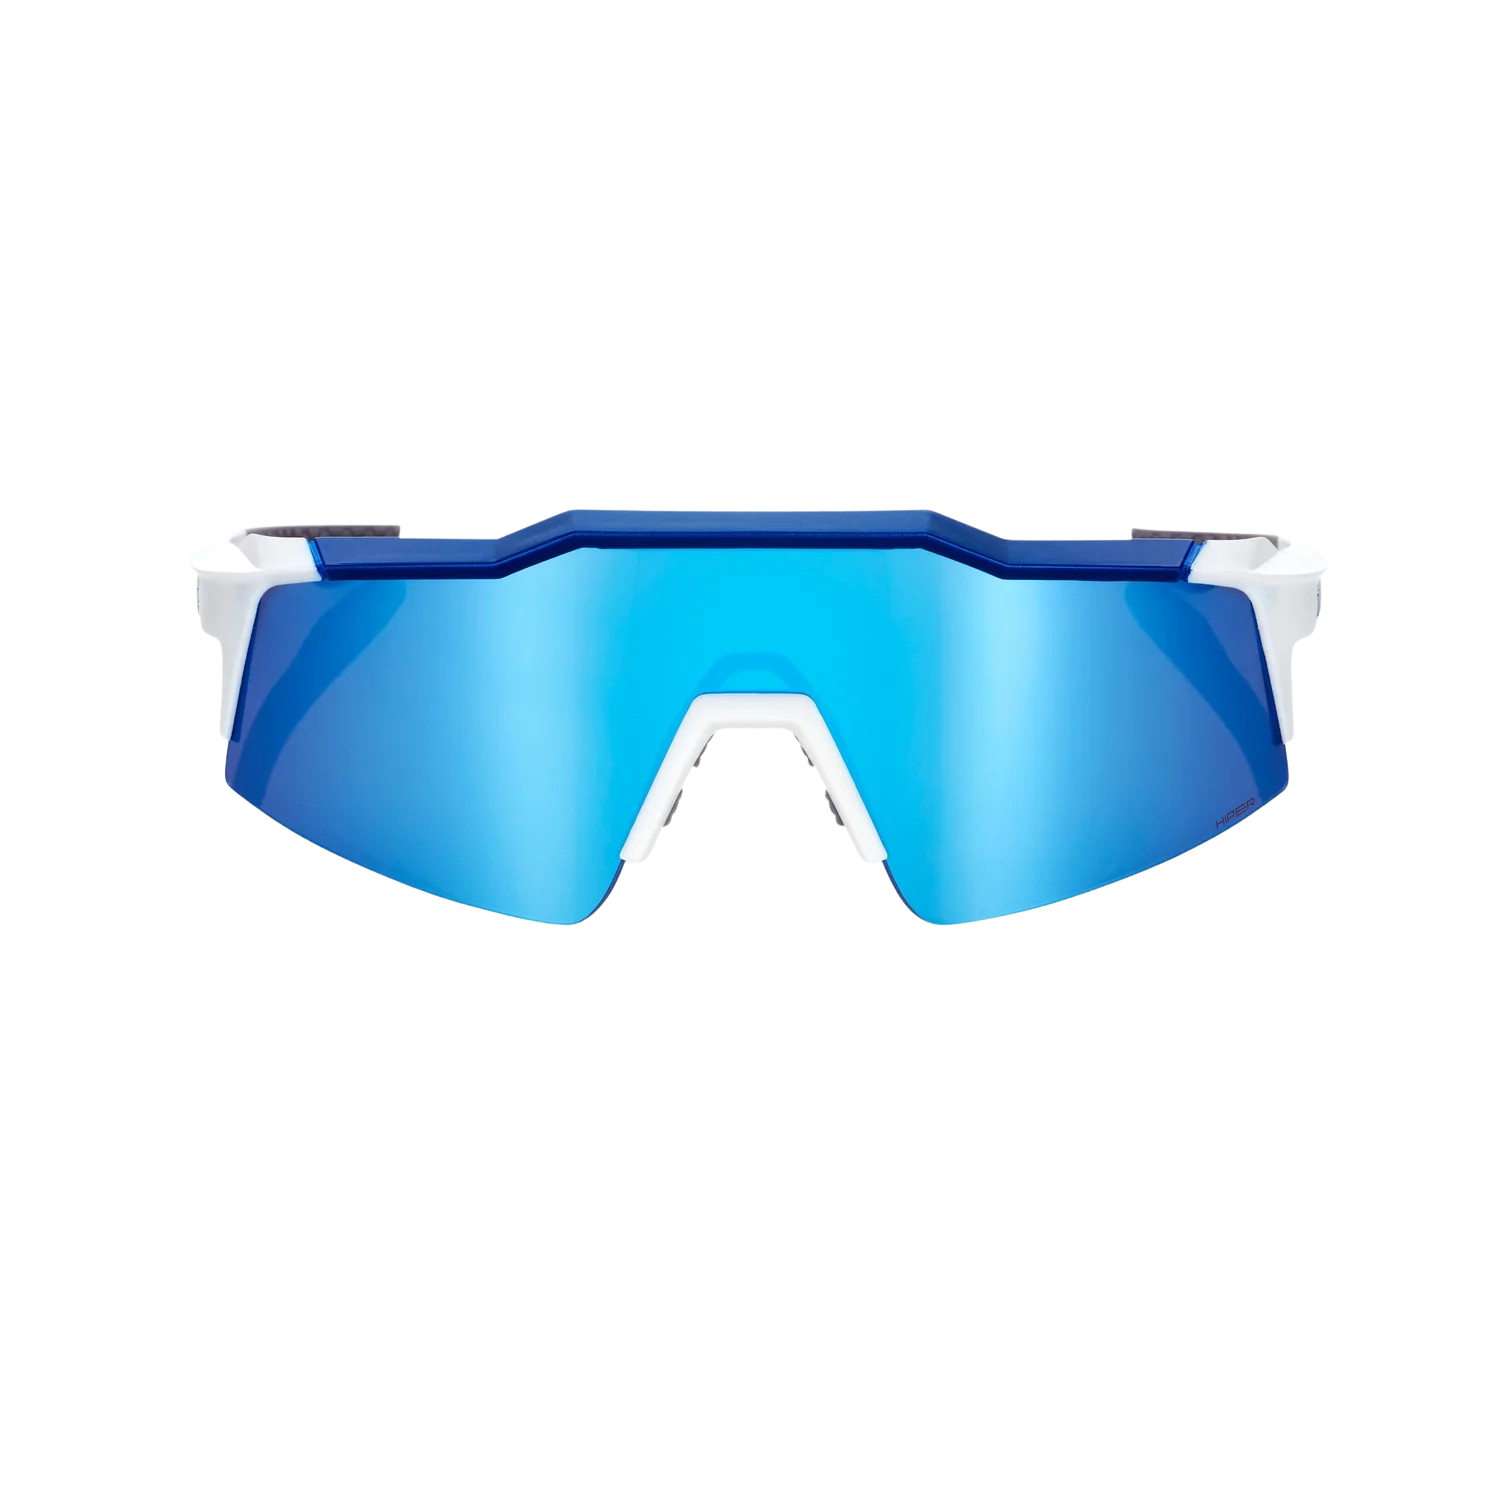 100% SPEEDCRAFT SL Mirror Sunglasses, , large image number null